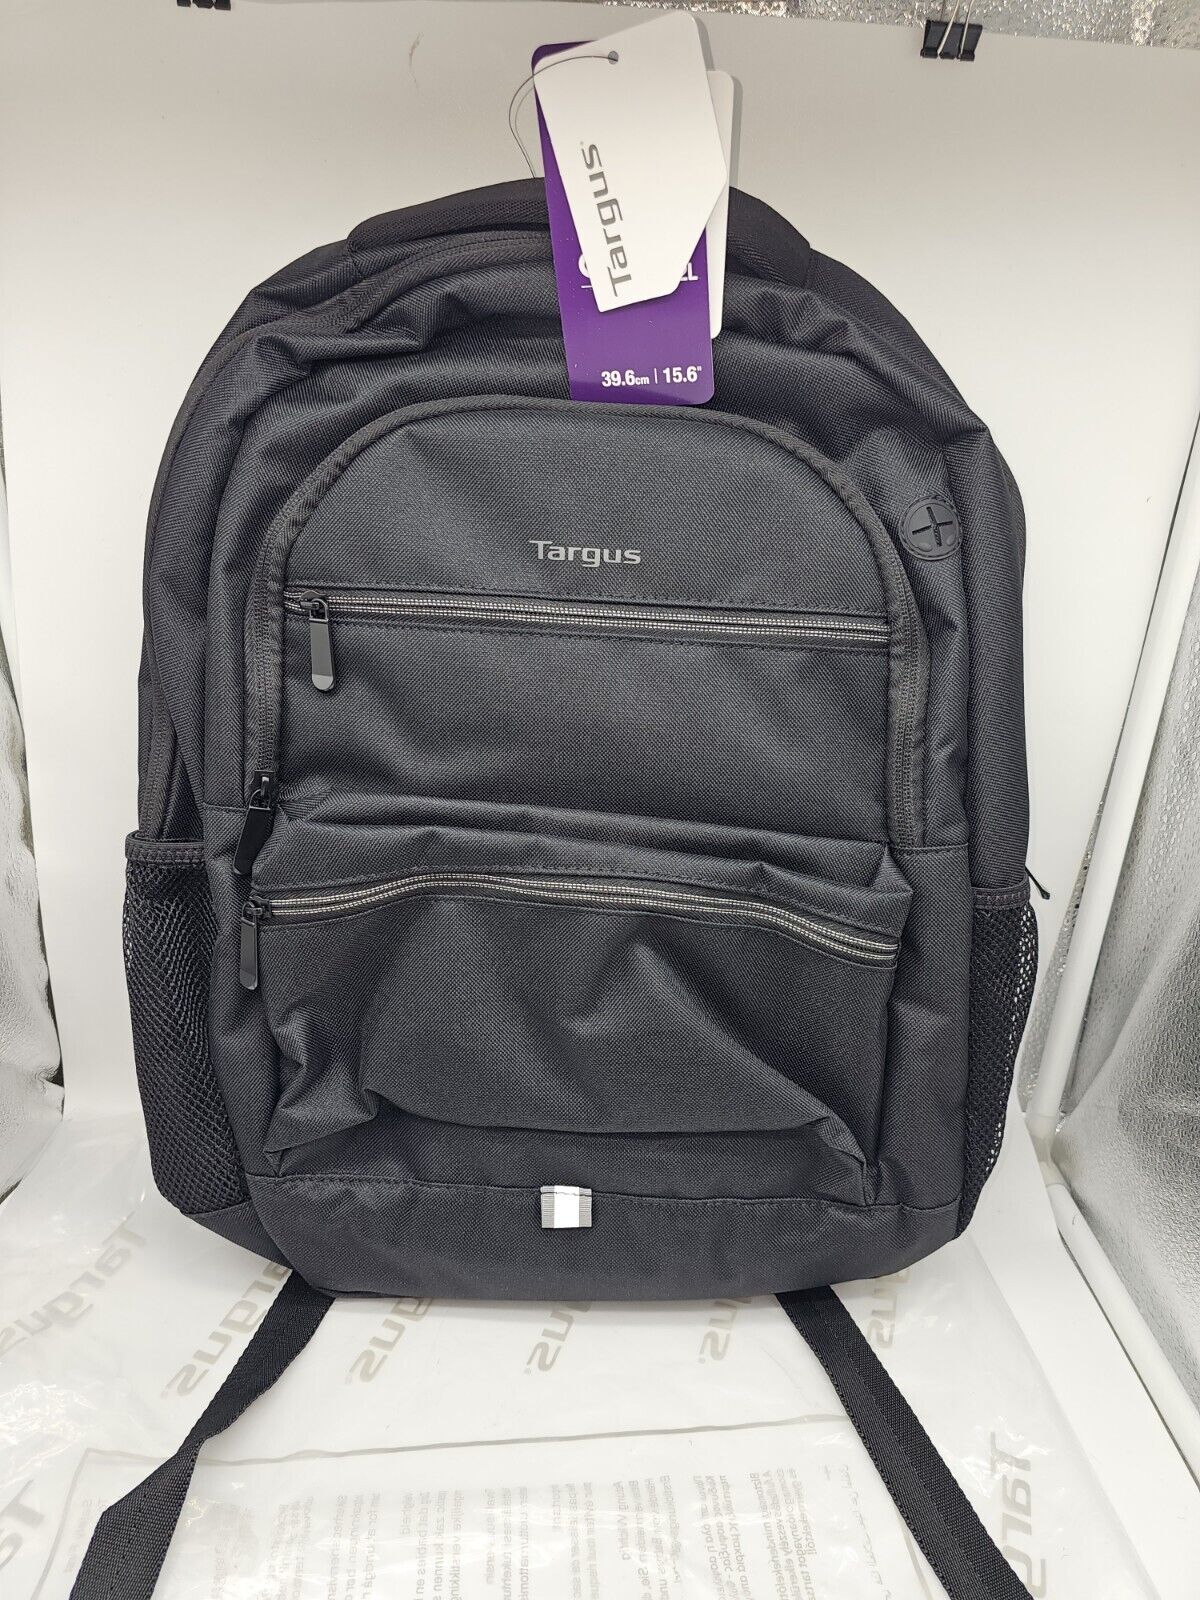 Targus - Octave II Backpack for 15.6 Laptops - Black (Unisex)